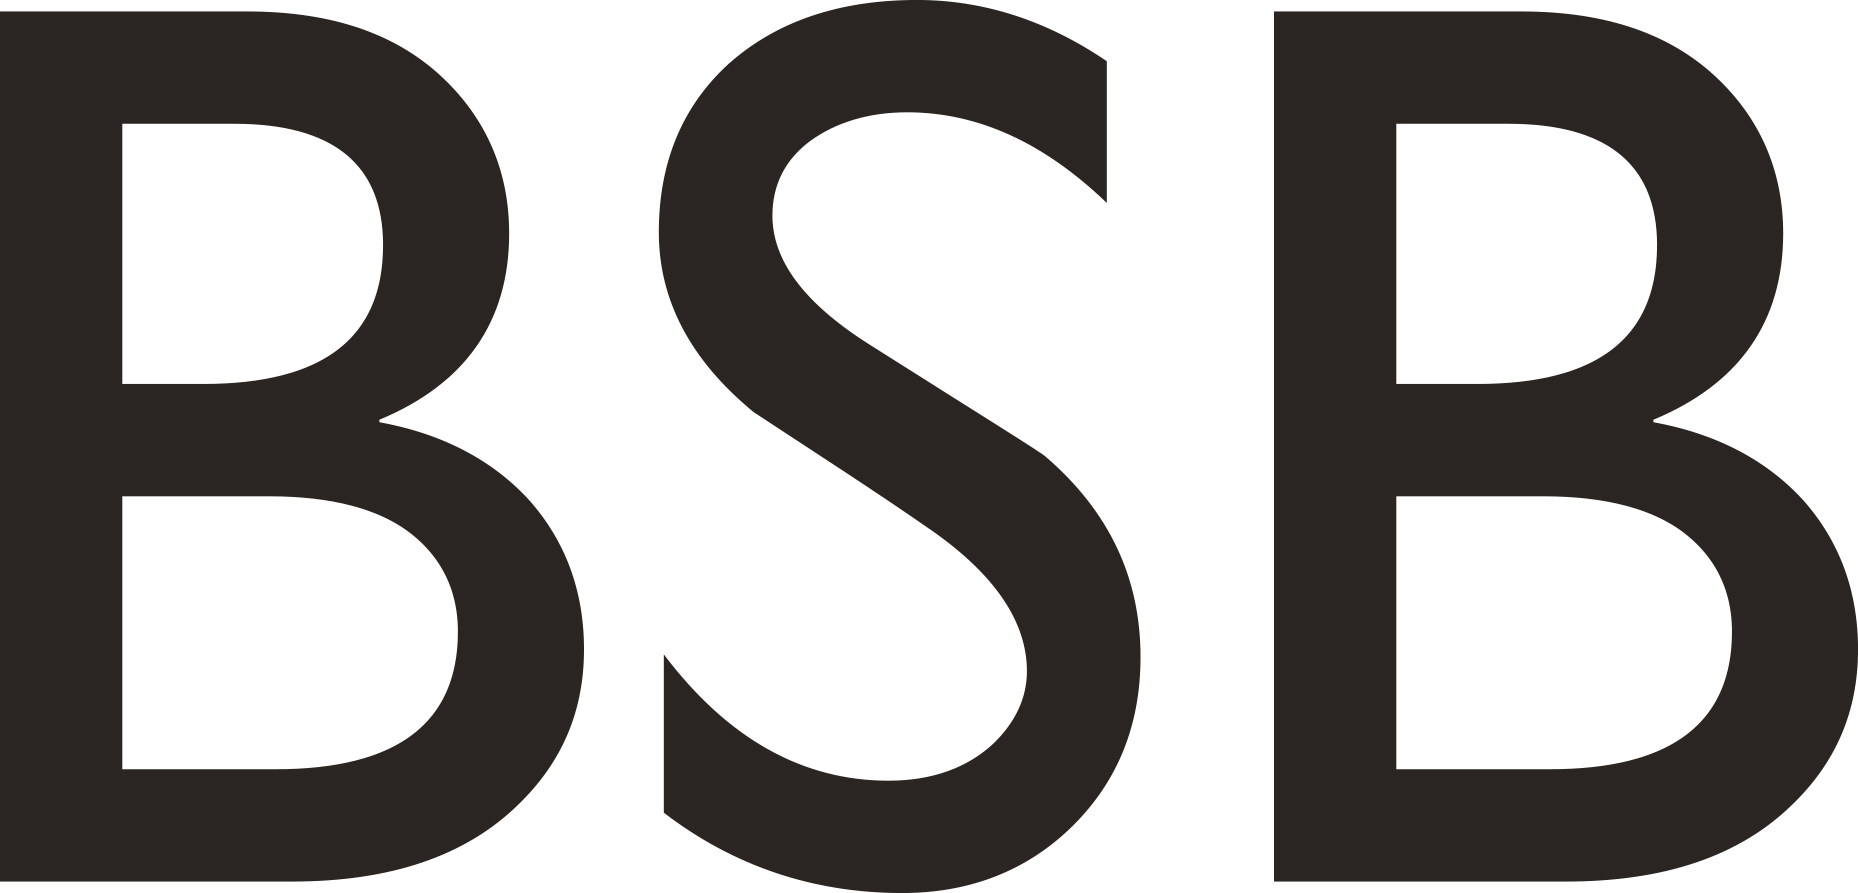 bsb